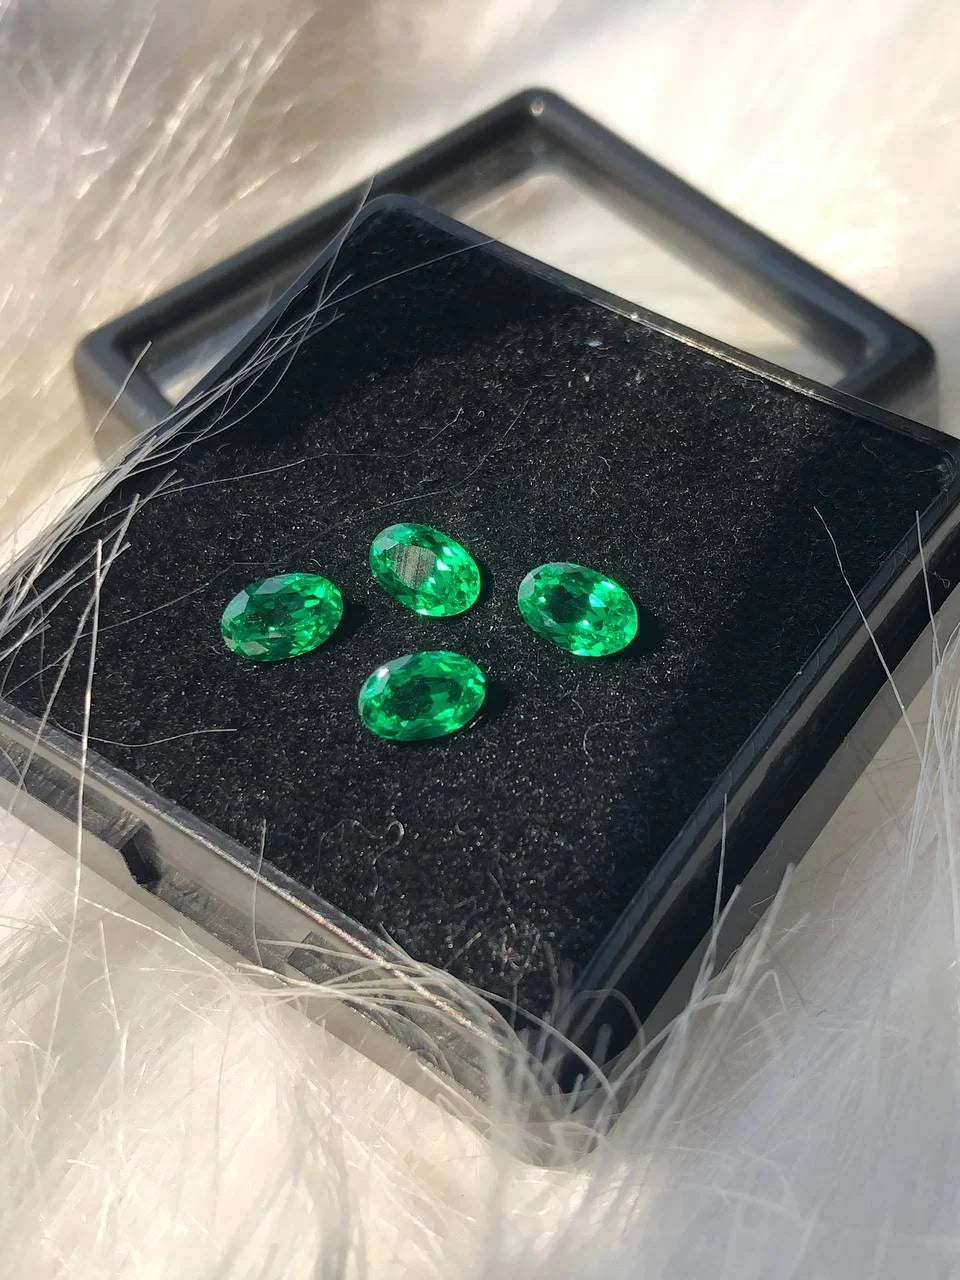 Oval Cut Lab Created Emerald Gemstone